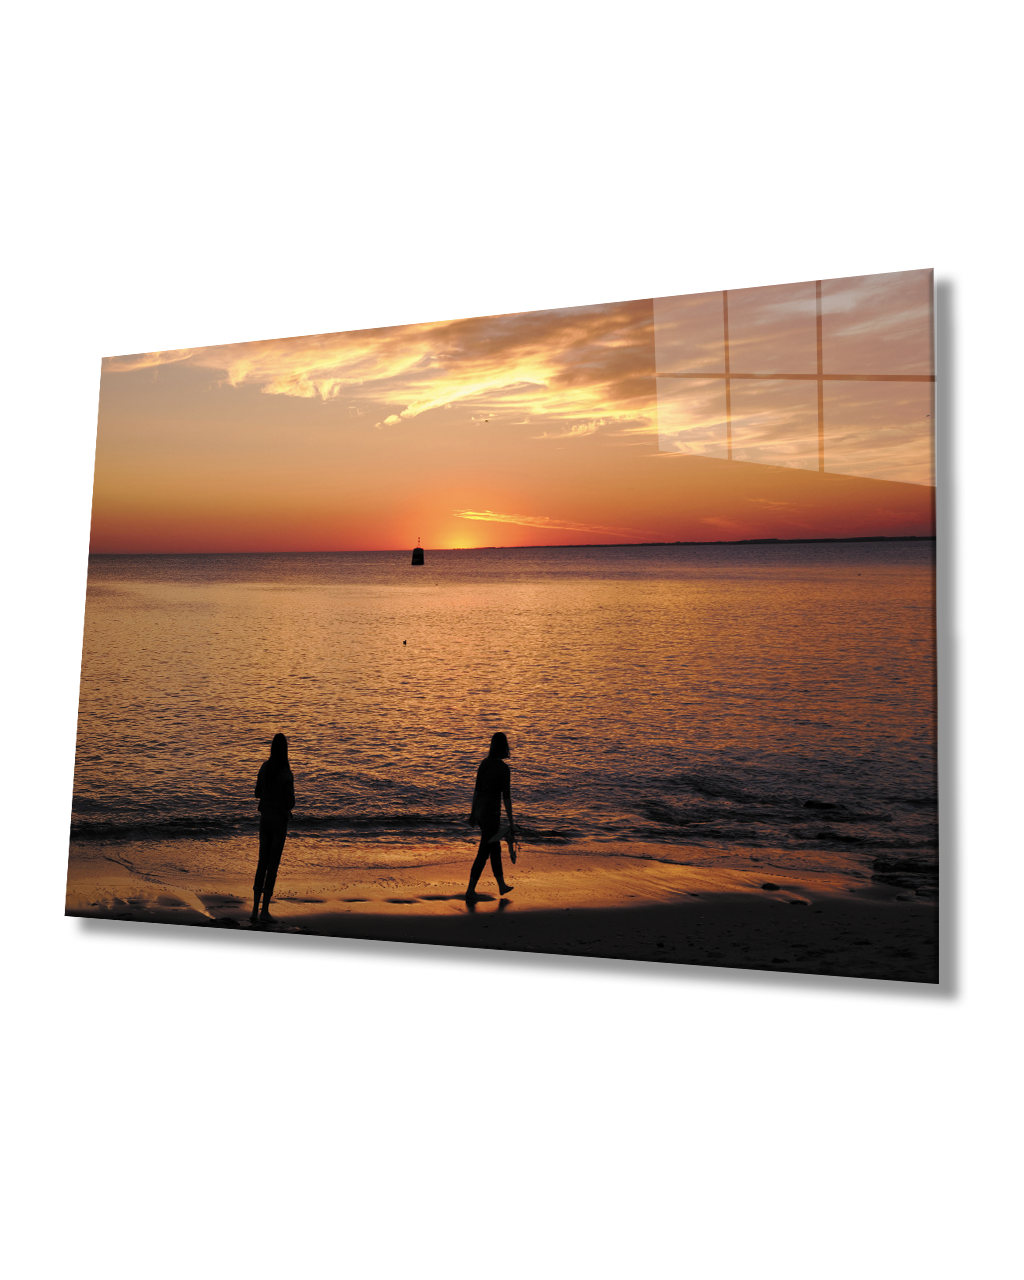 Gün Batımı Deniz Sahil Cam Tablo  4mm Dayanıklı Temperli Cam Sunset Sea Beach Glass Table 4mm Durable Tempered Glass